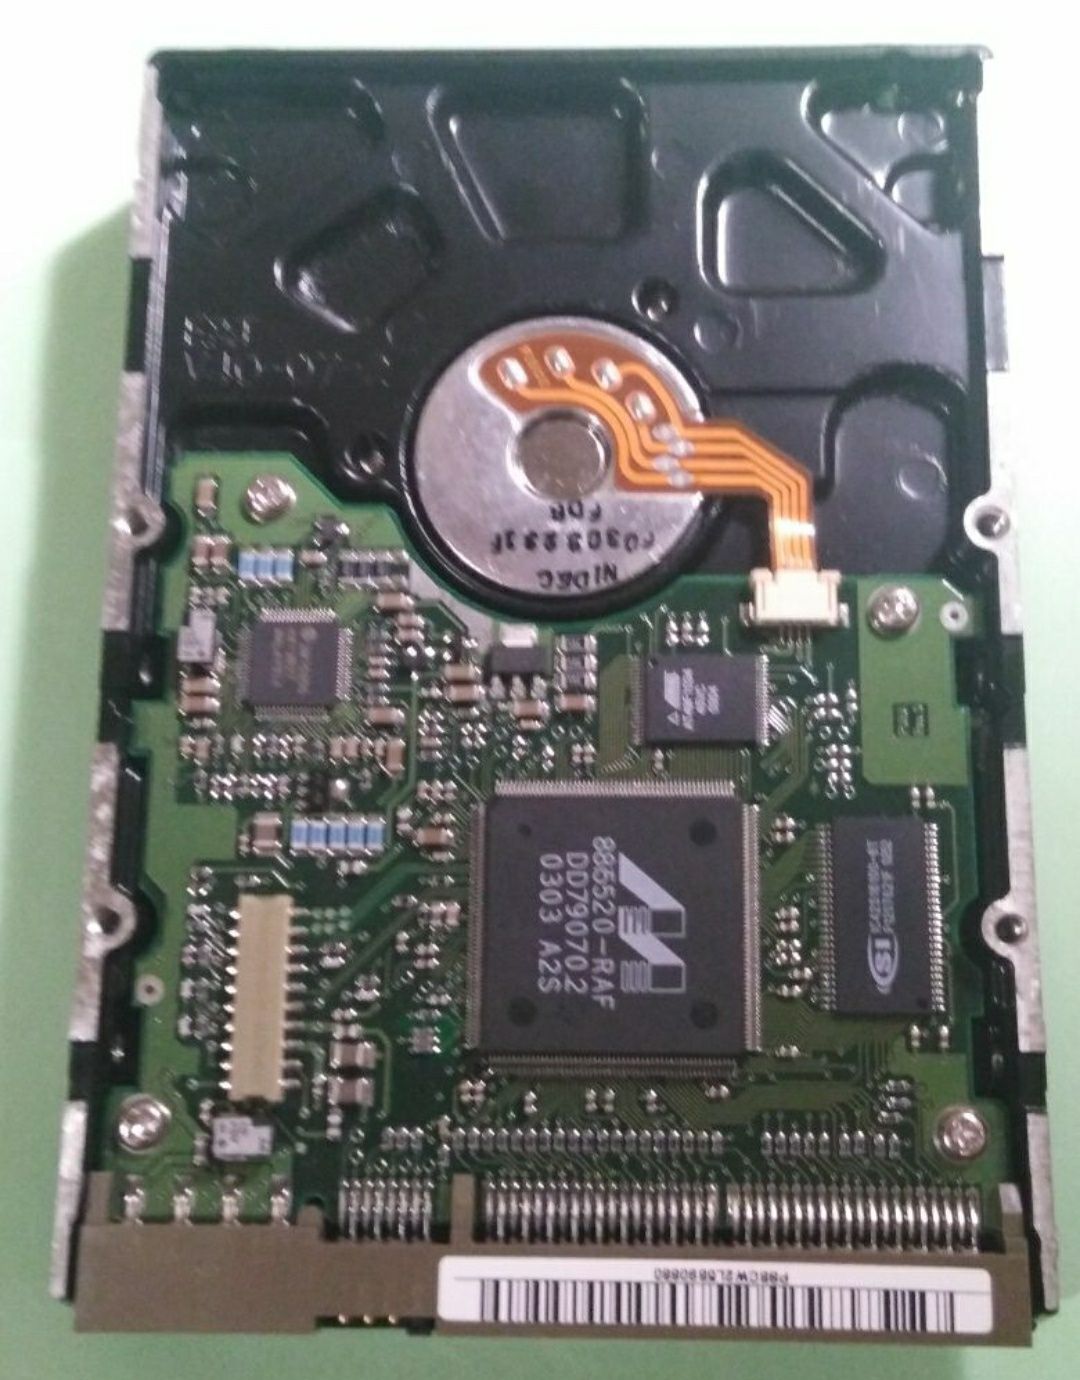 HDD SAMSUNG 40Gb SP40A2H
Жёсткий диск Samsung,снят очень окуратно ,скл